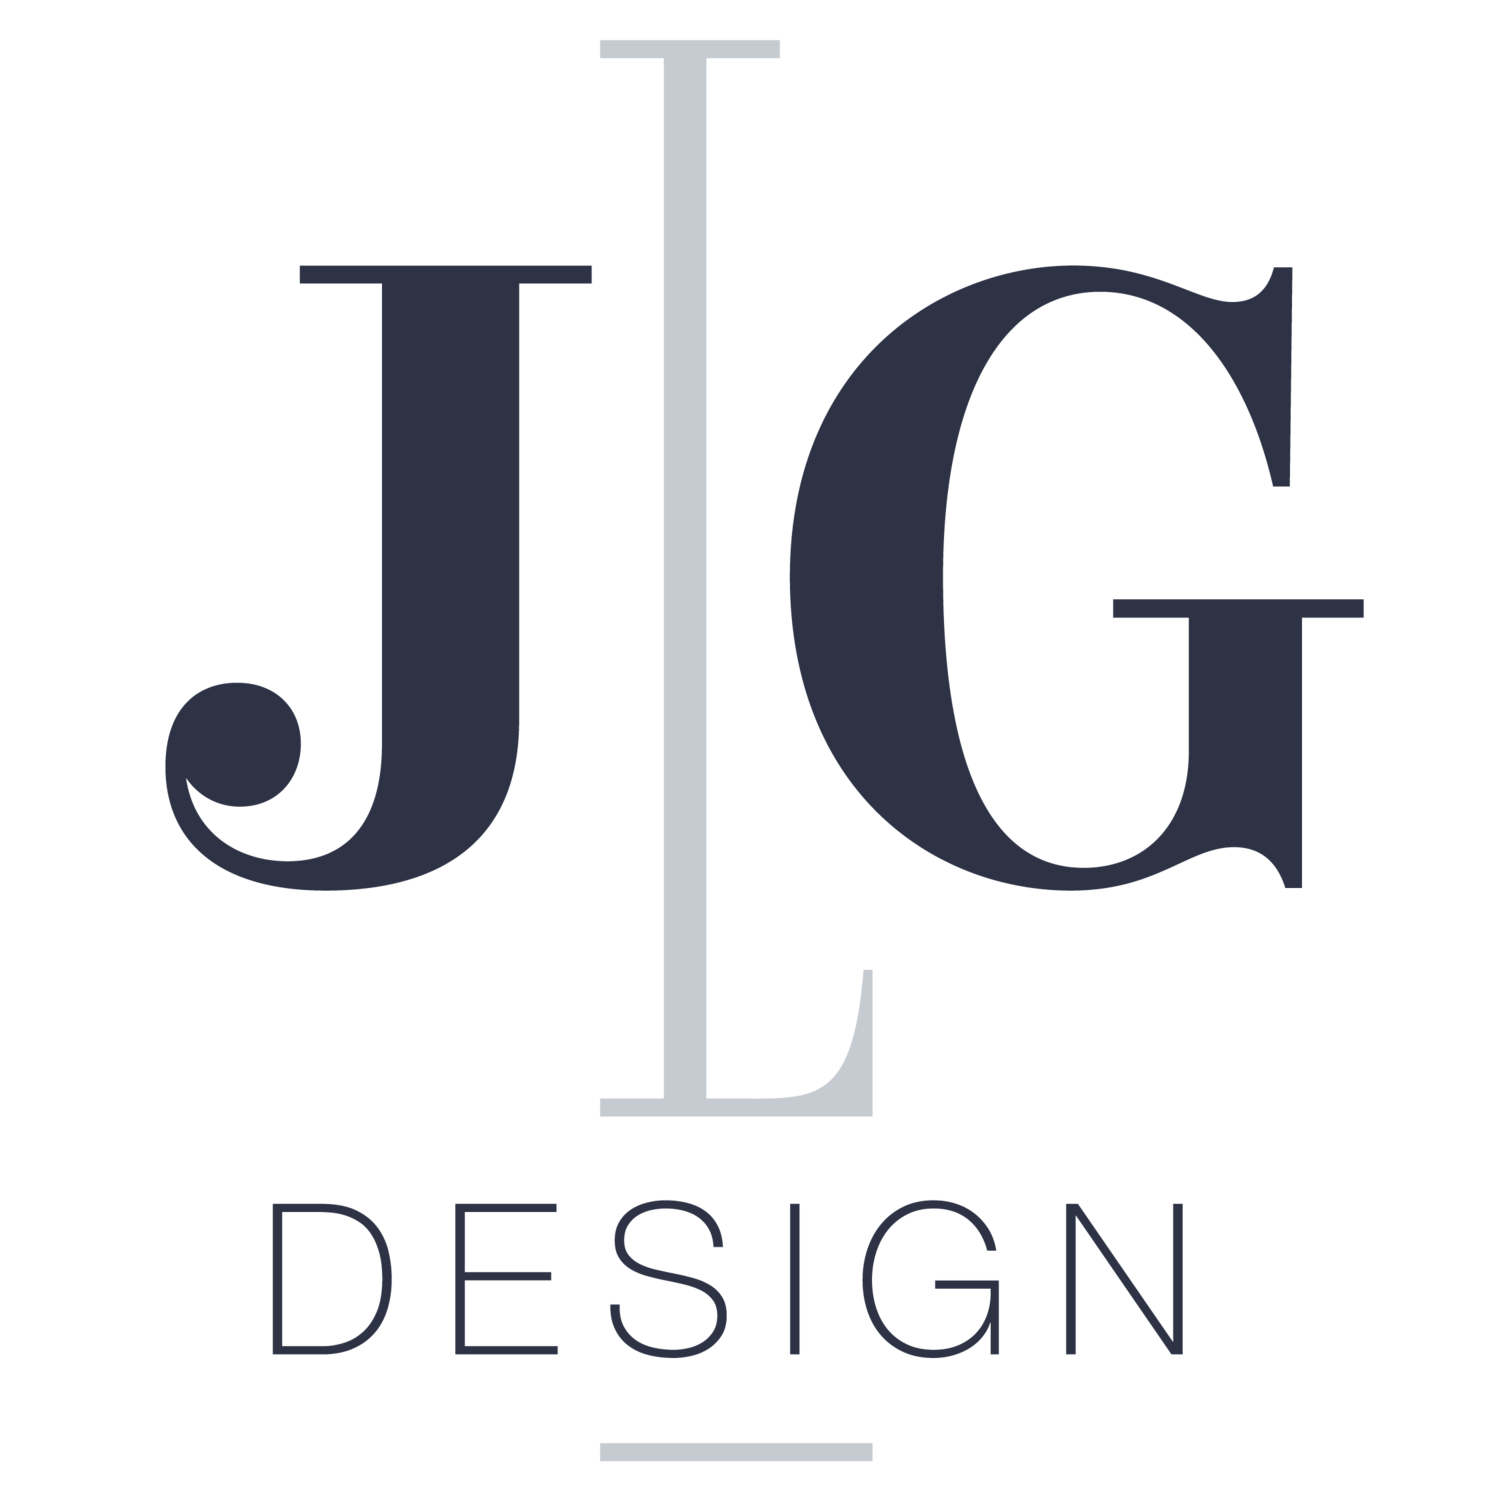 JLG Design